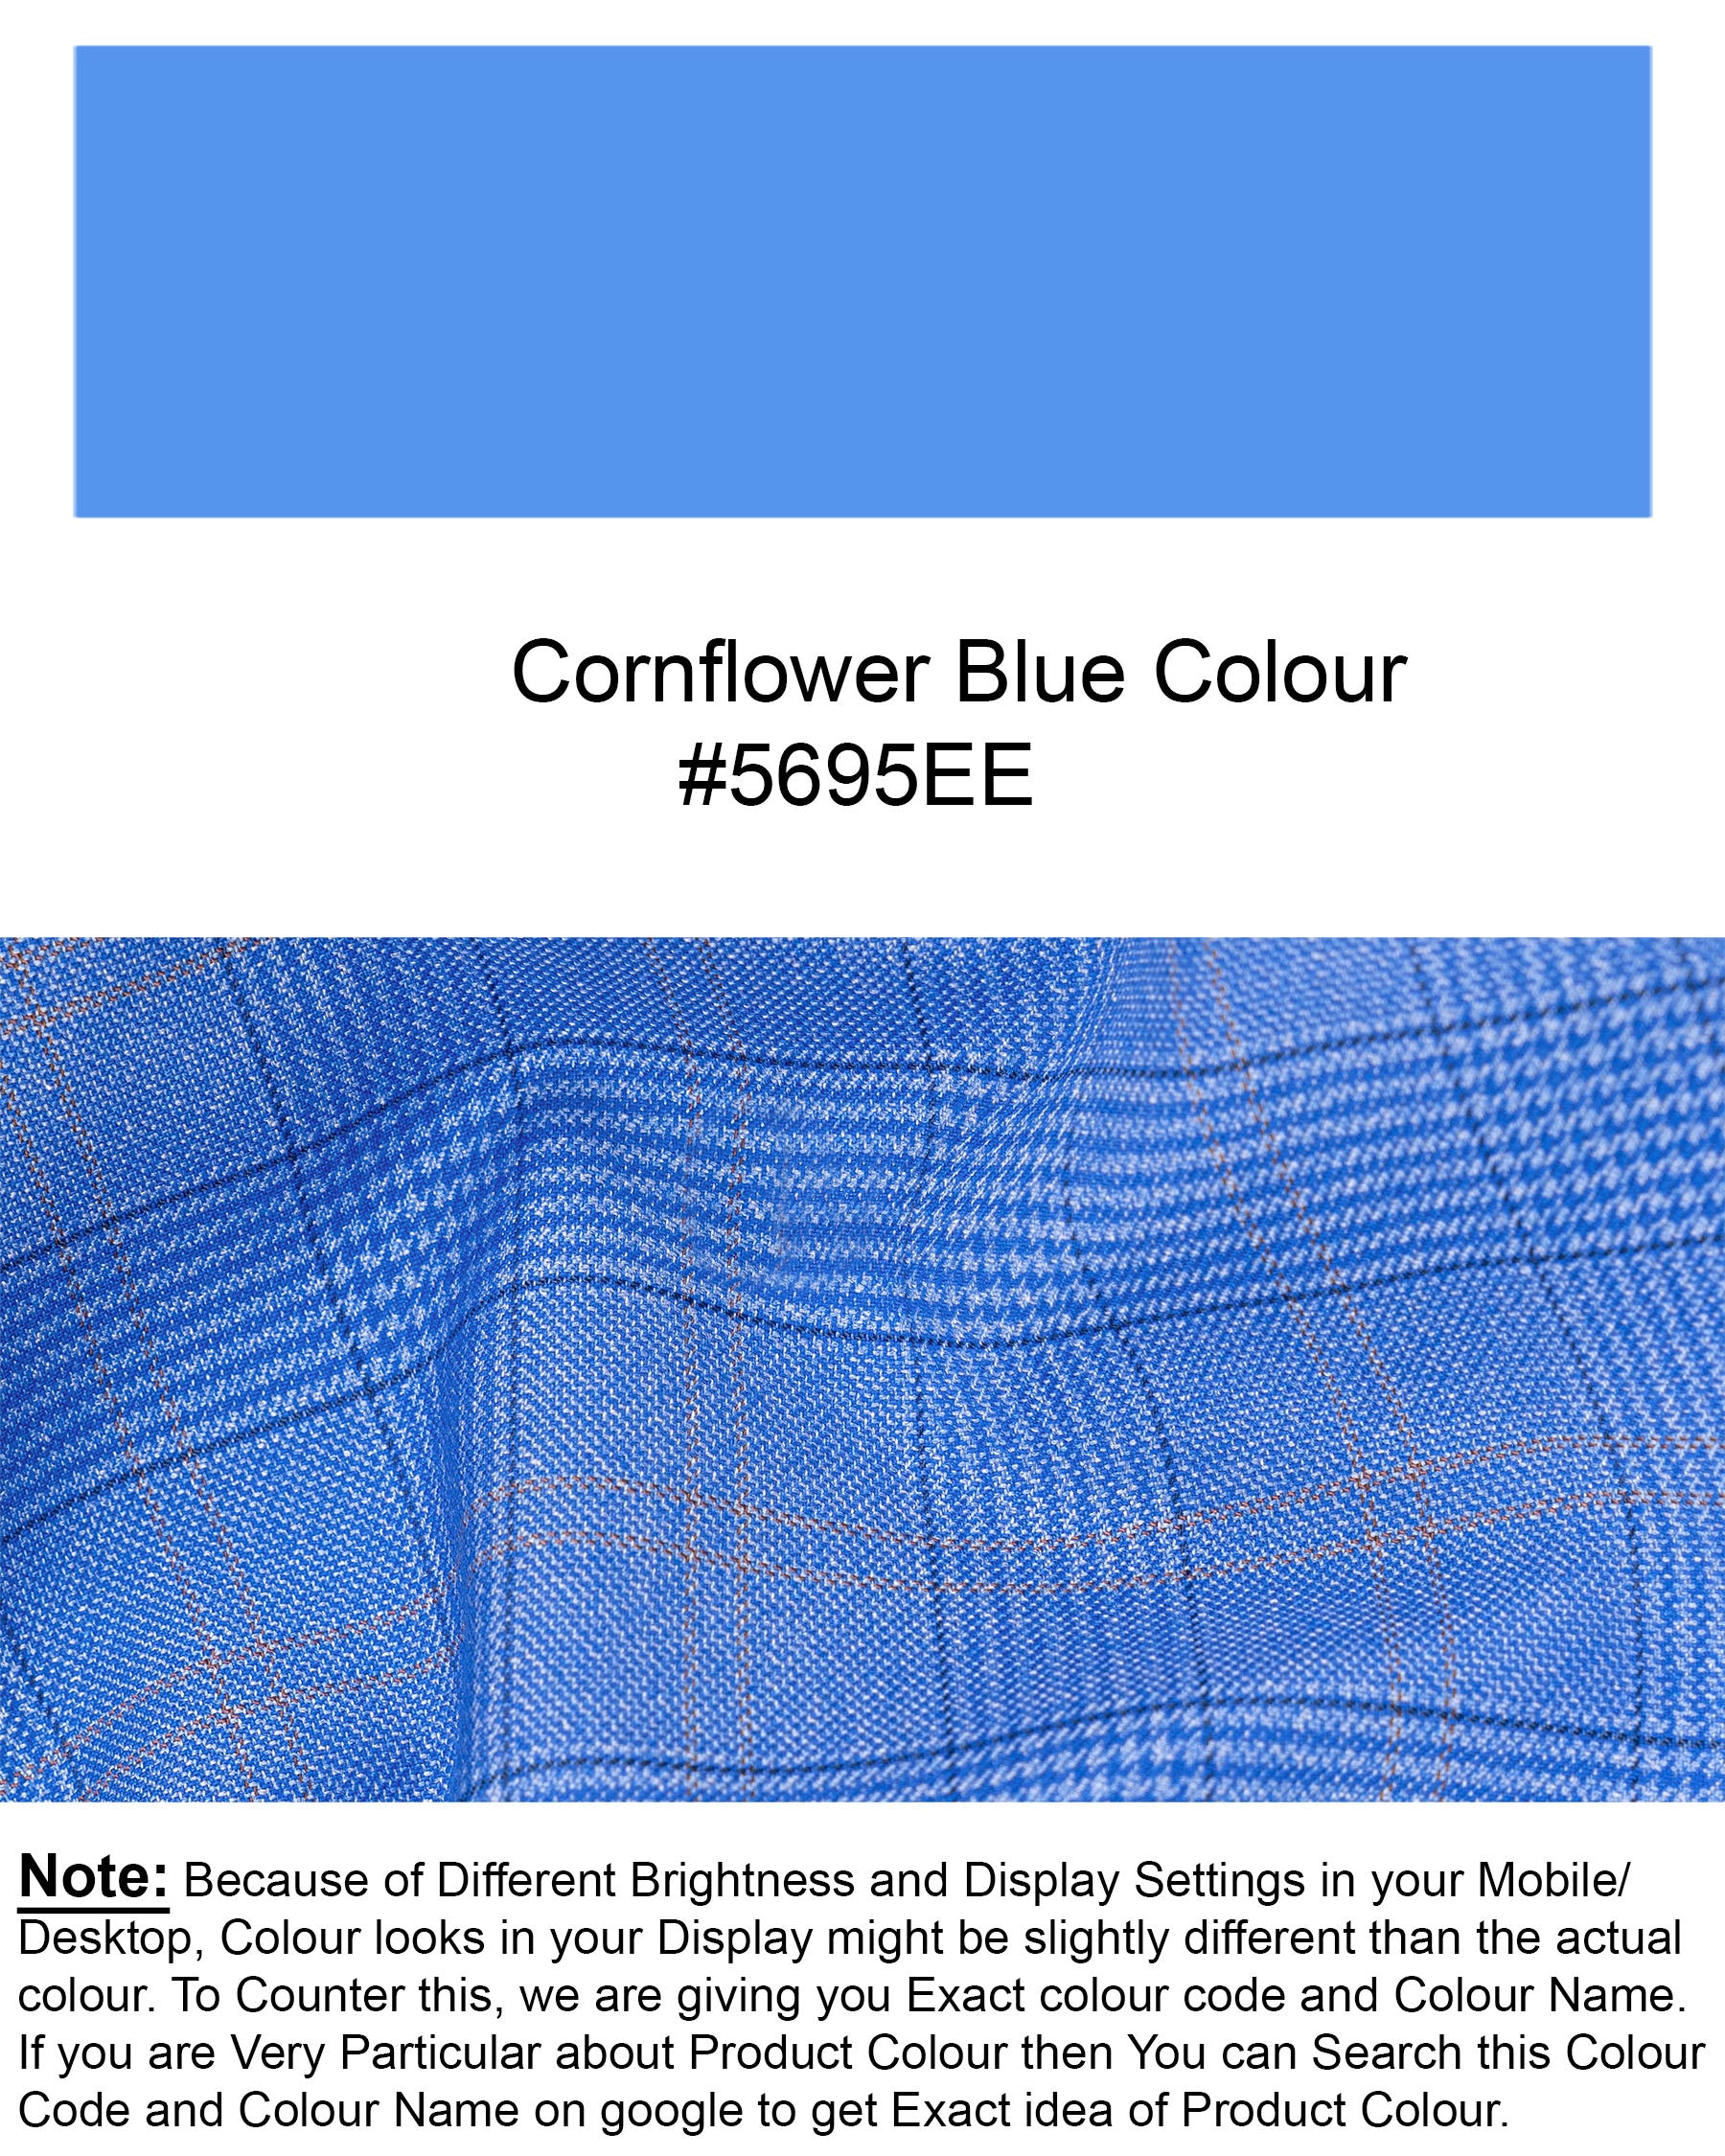 Cornflower Blue Super fine Plaid Woolrich Blazer BL1635-SB-36, BL1635-SB-38, BL1635-SB-40, BL1635-SB-42, BL1635-SB-44, BL1635-SB-46, BL1635-SB-48, BL1635-SB-50, BL1635-SB-52, BL1635-SB-54, BL1635-SB-56, BL1635-SB-58, BL1635-SB-60